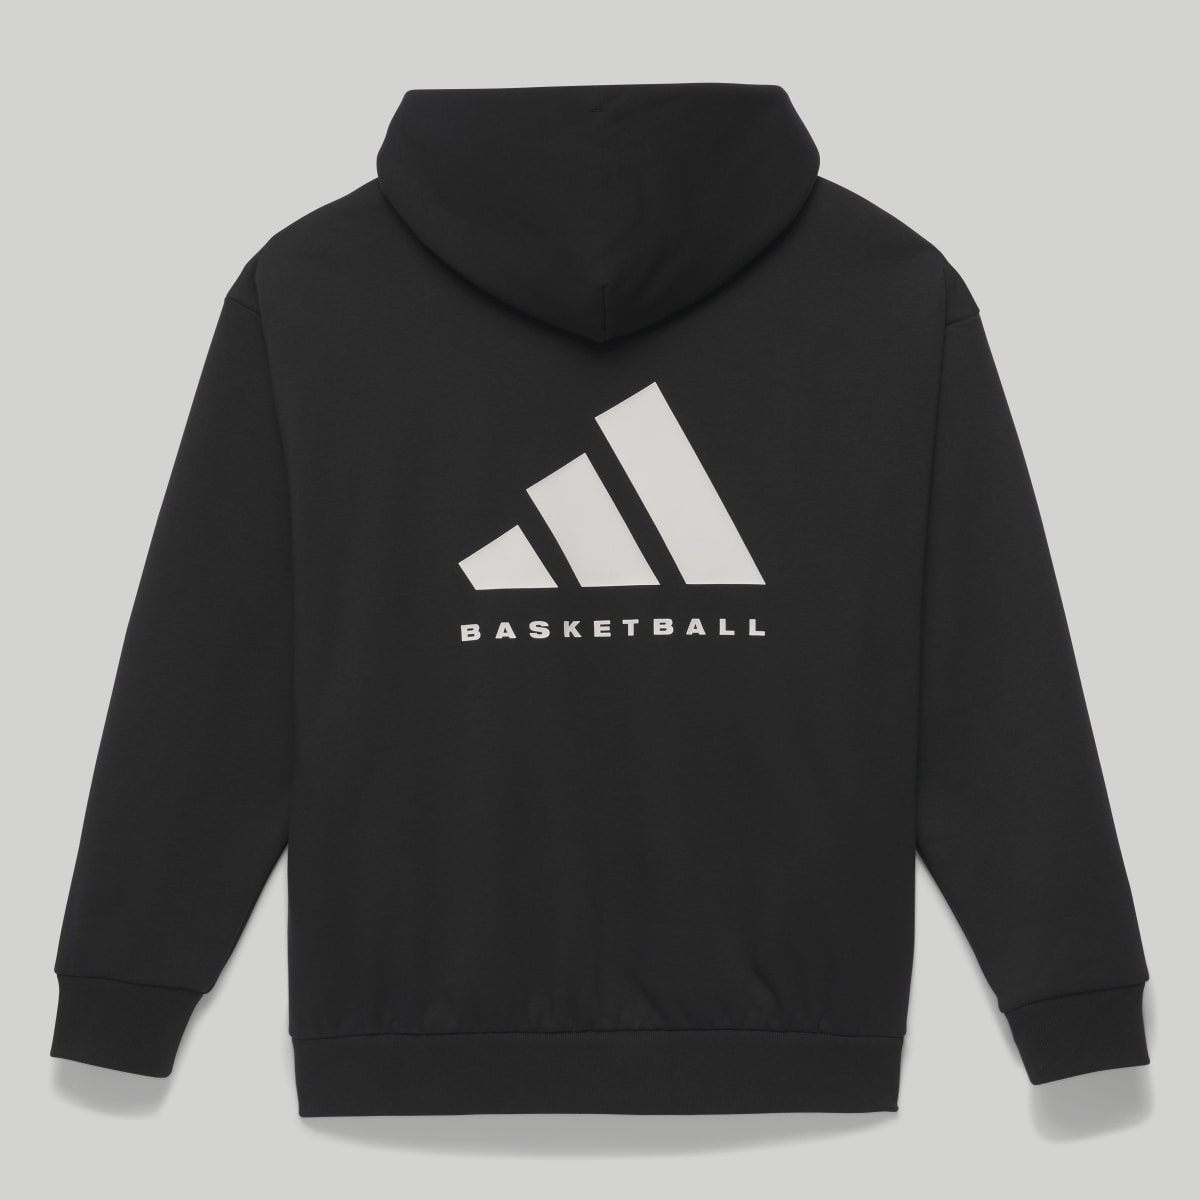 Adidas Basketball Hoodie. 4